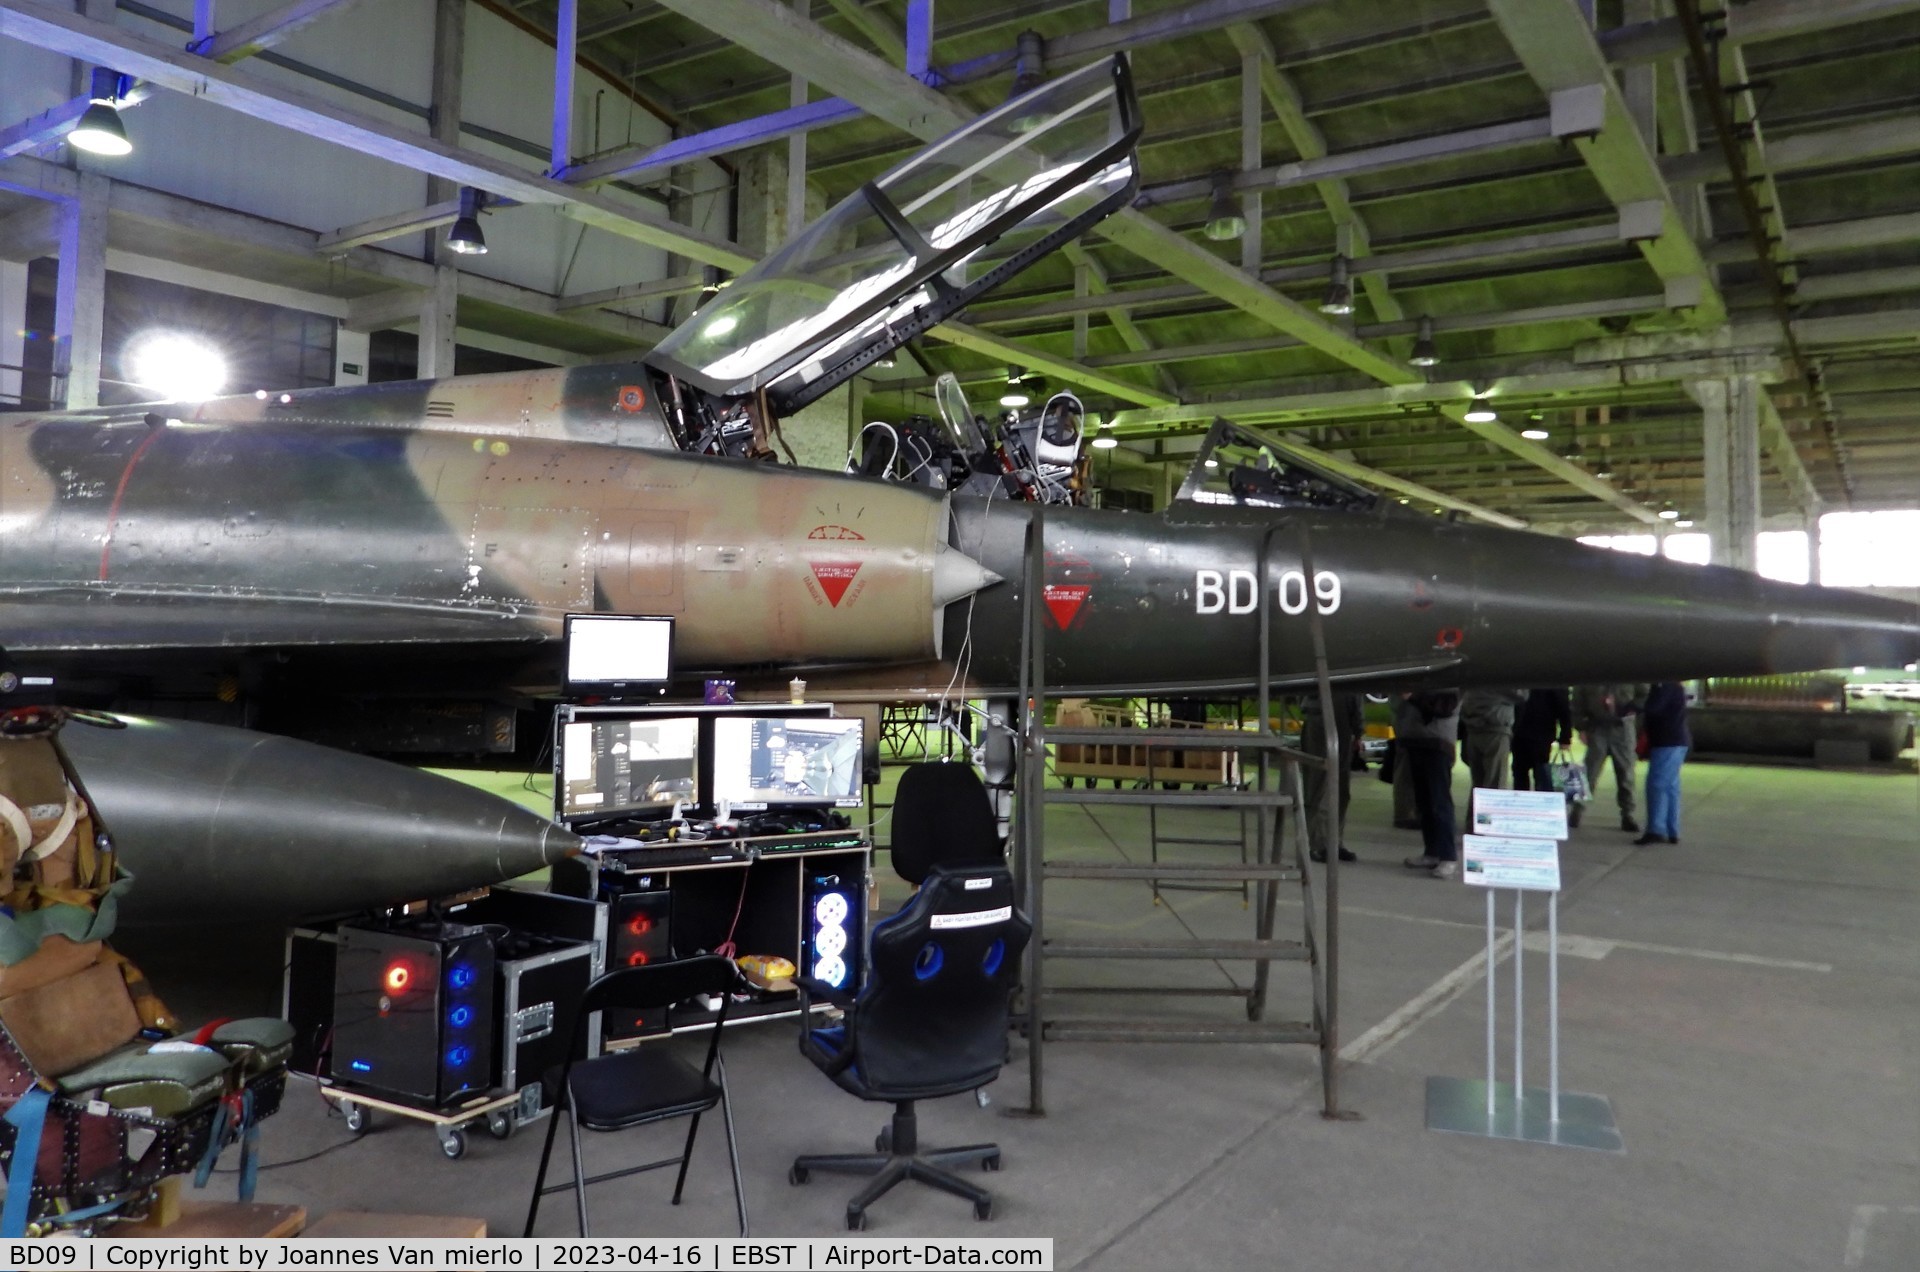 BD09, SABCA Mirage 5BD C/N 209, Stored